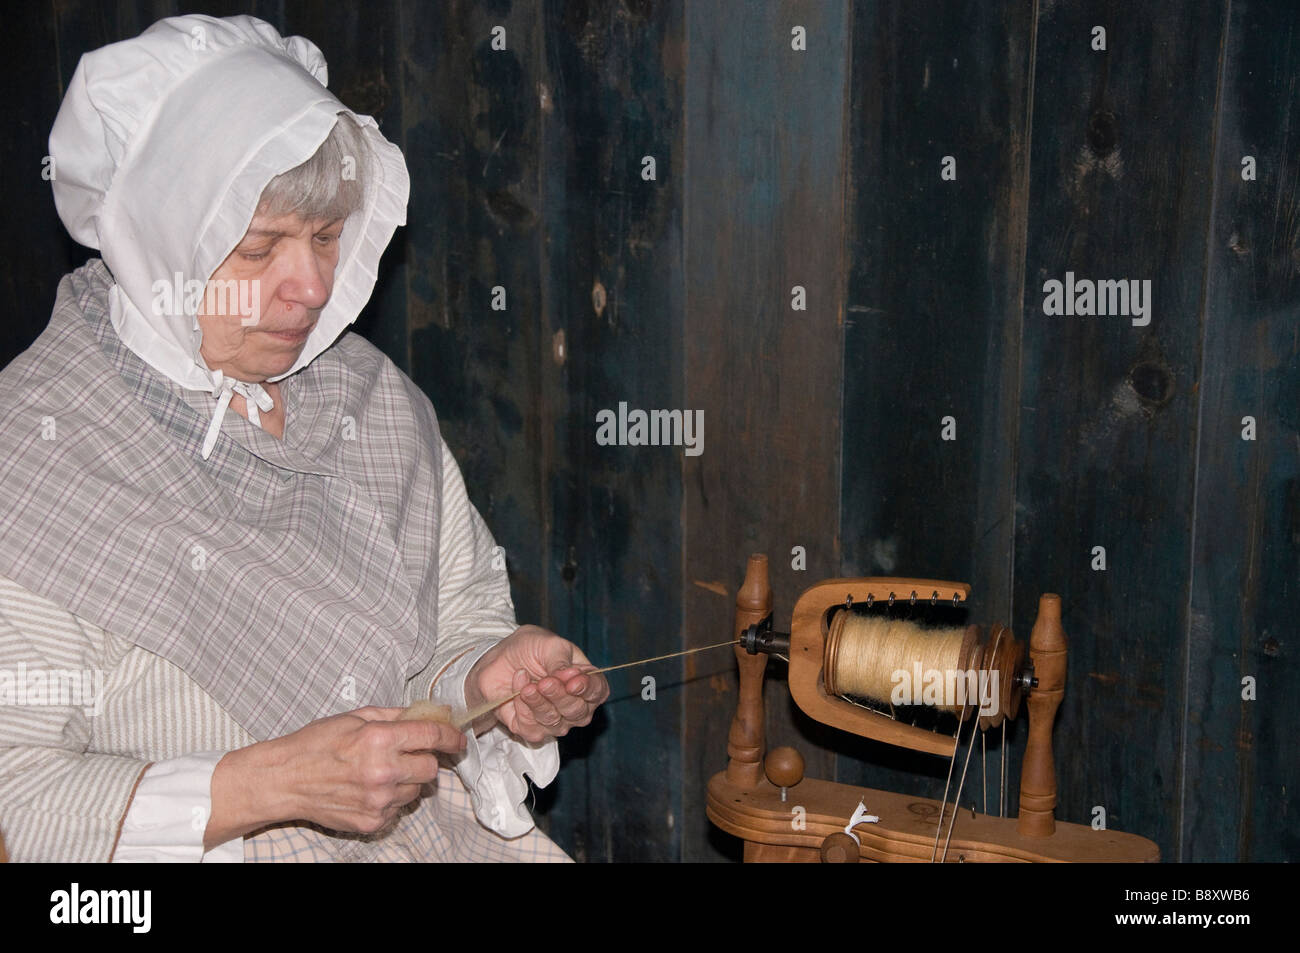 Eine ältere Frau, gekleidet in Pionier Kleidung sitzt und Wolle spinnen.  Kein Model-Release - erfordert nur zur redaktionellen Verwendung  Stockfotografie - Alamy